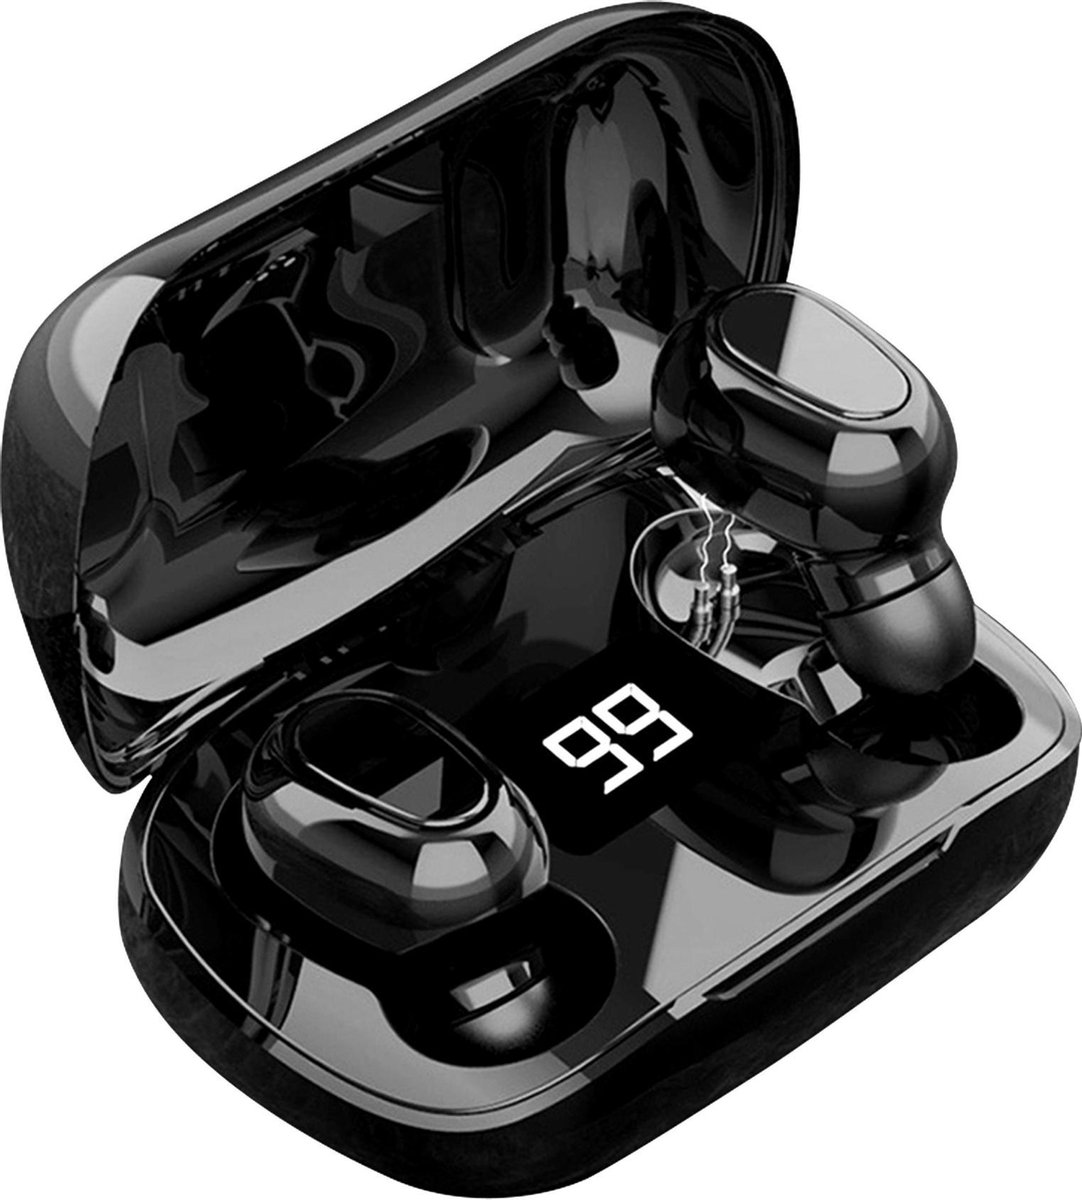 Draadloze Oordopjes - Oortjes Draadloos - In ear Oordopjes - Draadloze oortjes Bluetooth - Earbuds met Extra Bas Geschikt voor Sport Hardlopen IOS - Android - Techrie - Techrie